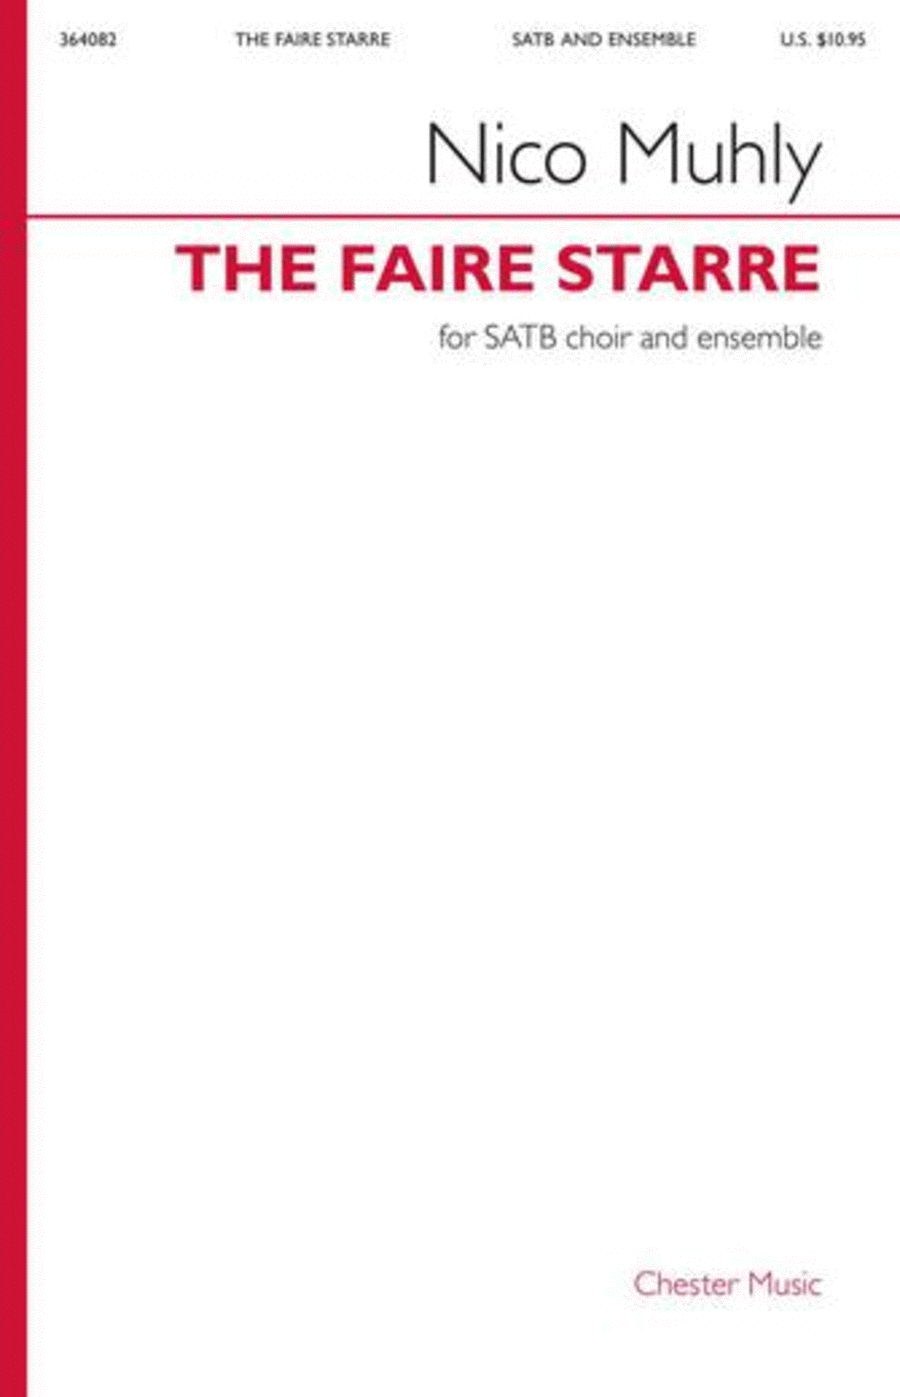 The Faire Starre